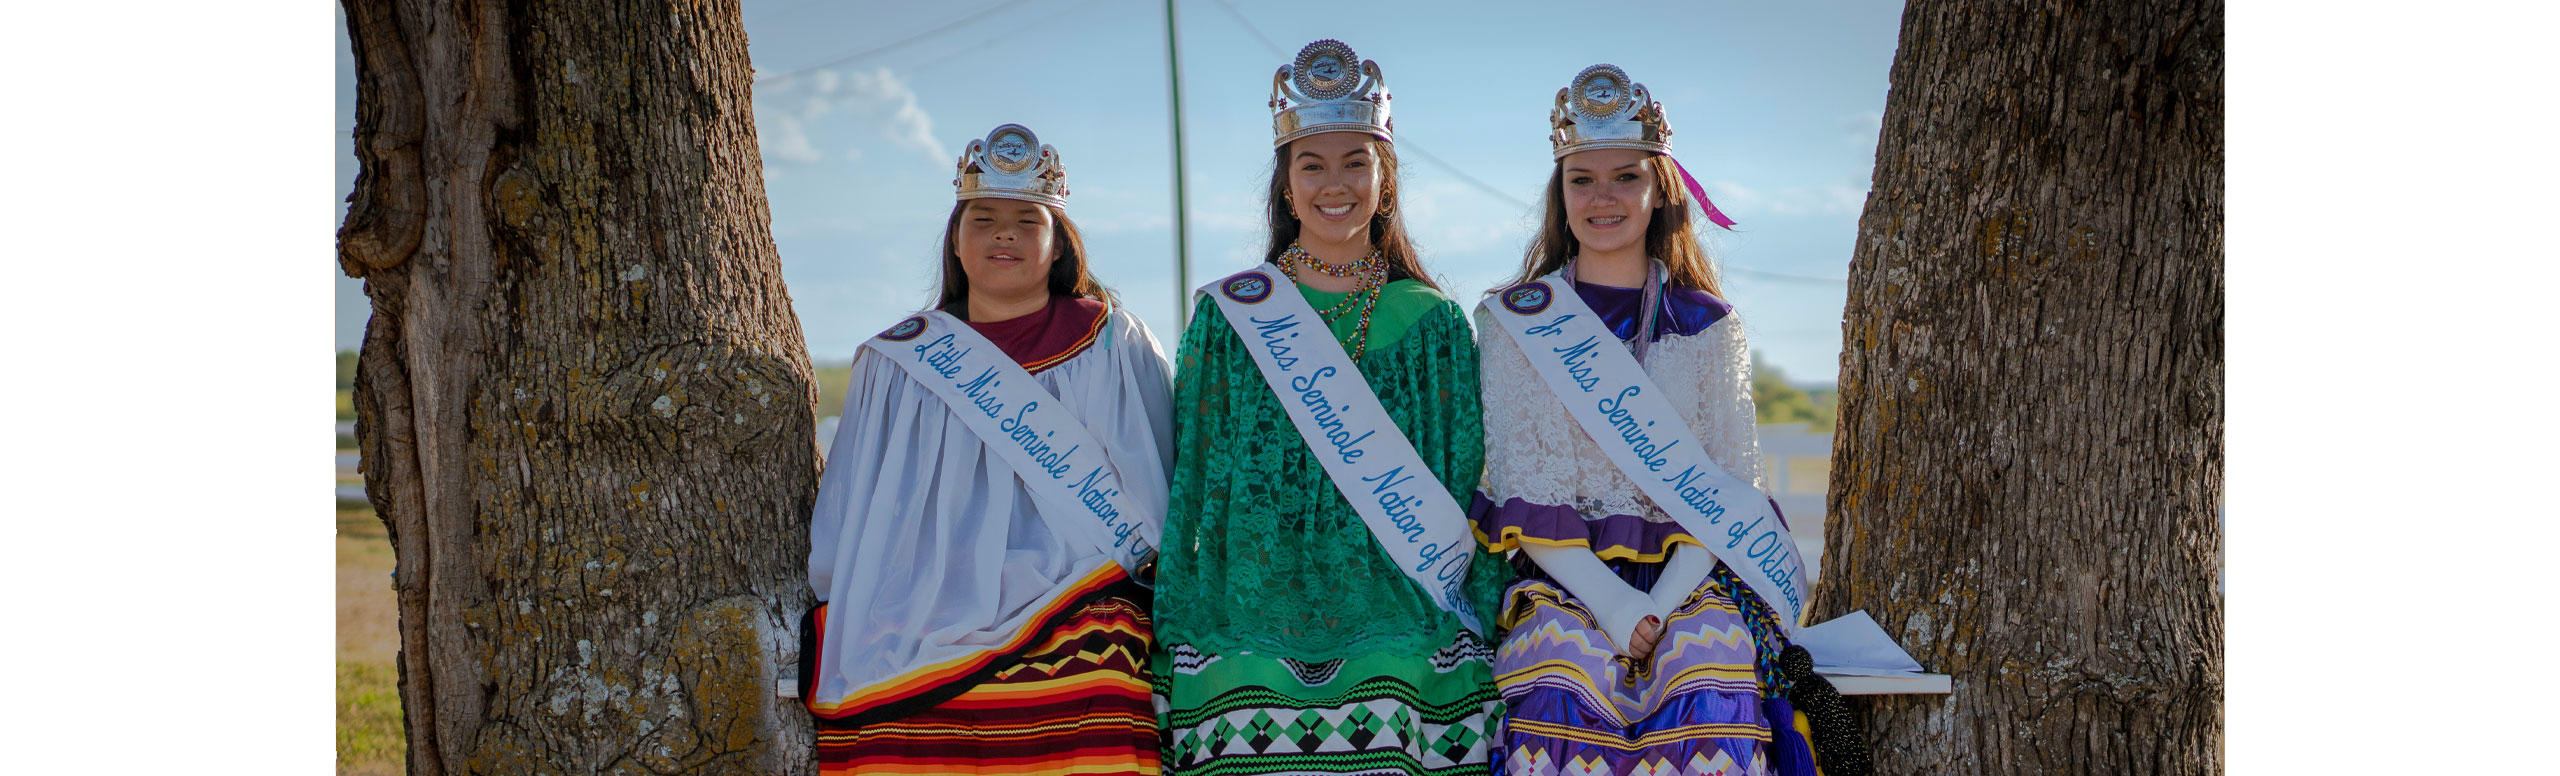 Miss Seminole, Little Miss Seminole, and Jr. Miss Seminole Nation of Oklahoma winners